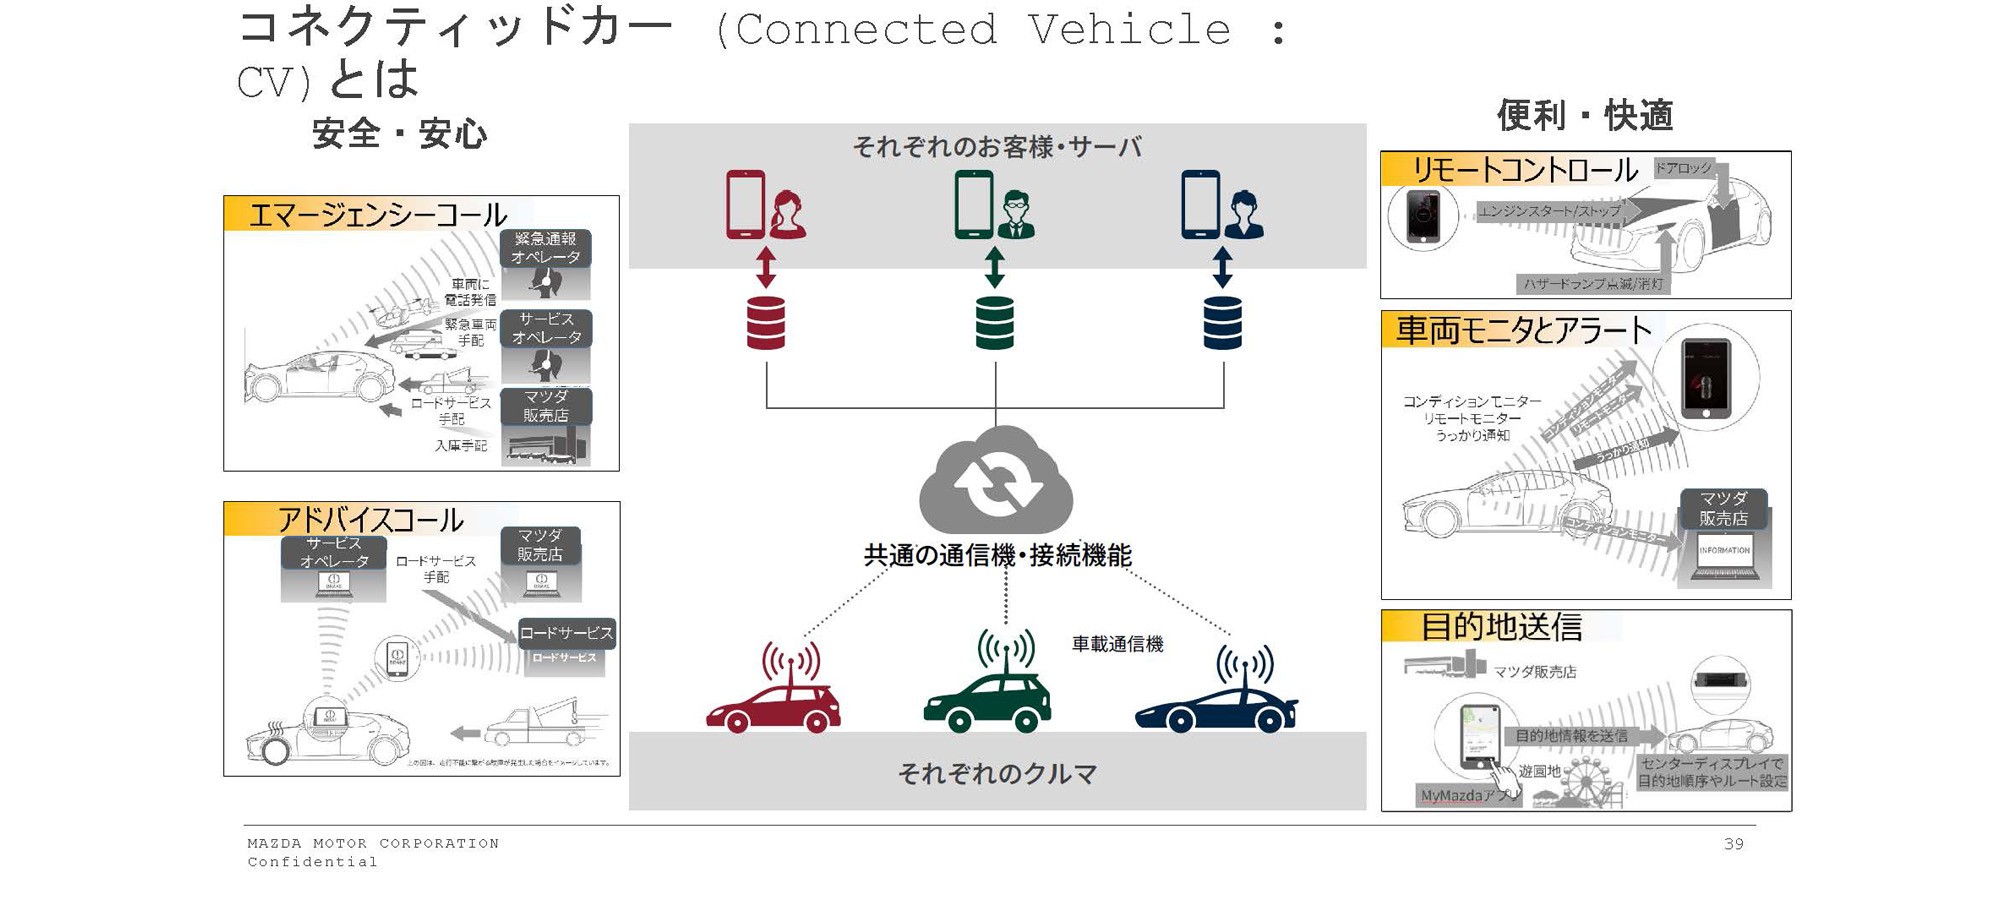 コネクティッドカー (Connected Vehicle :CV) とは「安全・安心」エマージェンシーコール、アドバイスコール、「それぞれのお客様・サーバ」共通の通信機・接続機能、車載通信機、それぞれのクルマ、「便利・快適」リモートコントロール、車両モニターとアラート、目的地送信